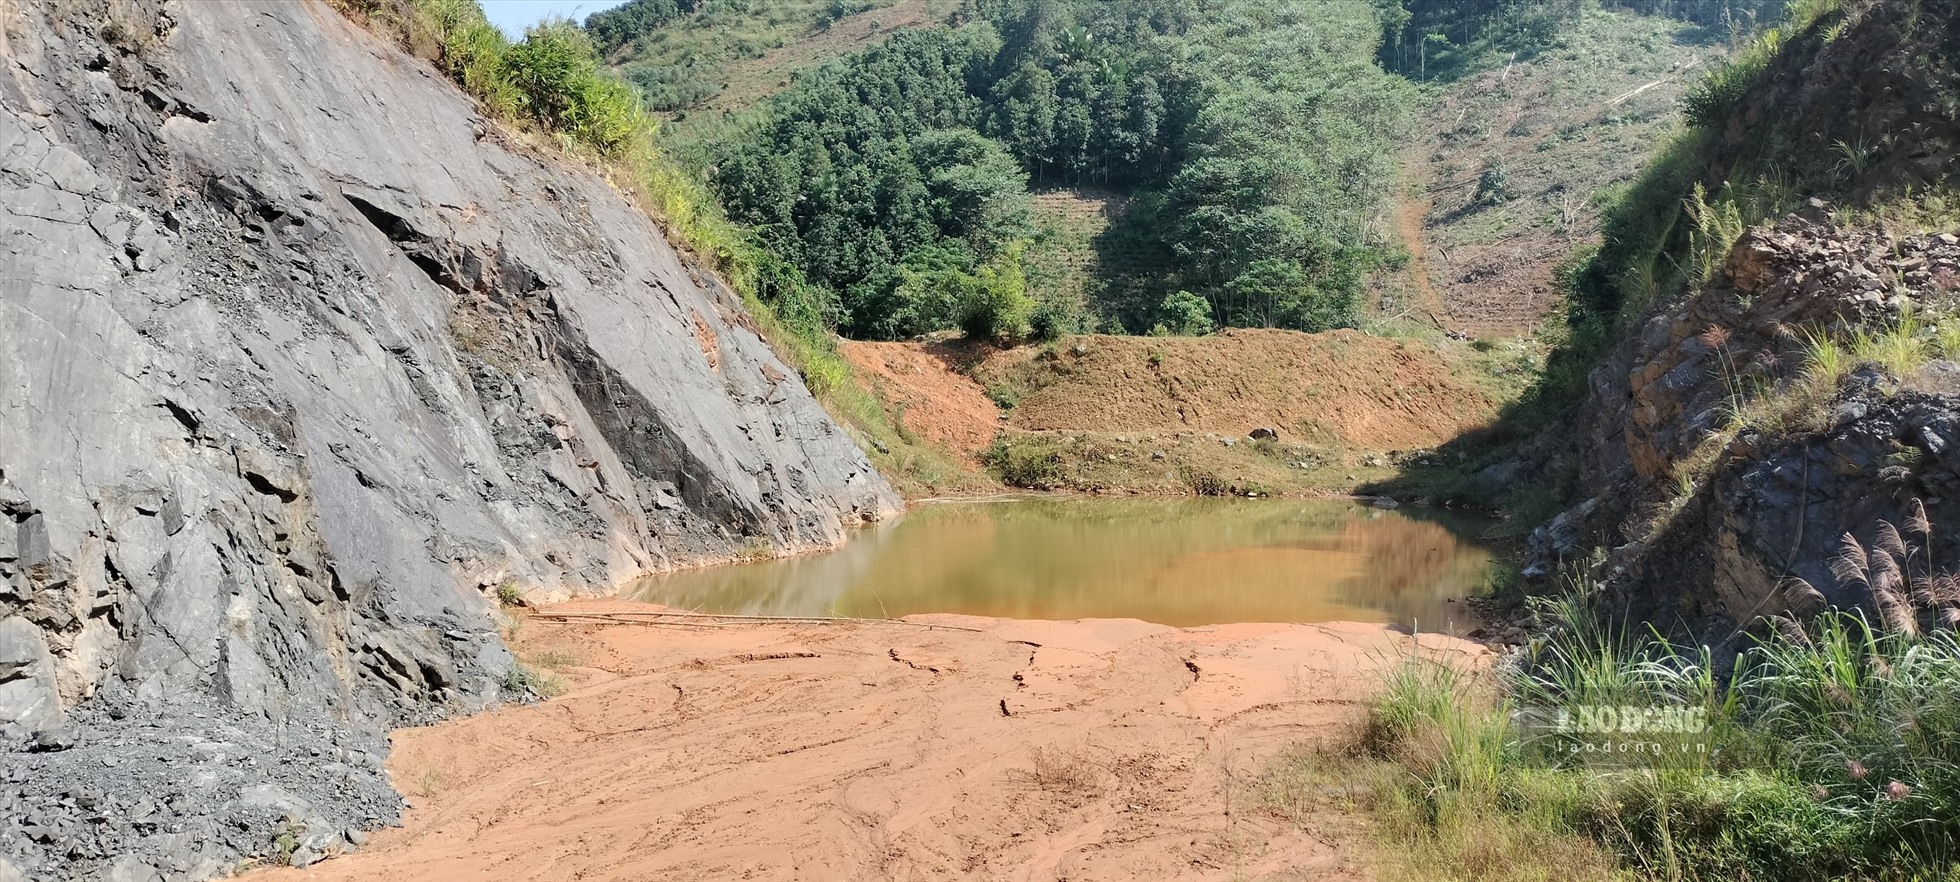 Cụ thể, trong quá trình hoạt động khai thác khoáng sản tại mỏ quặng sắt thuộc khu vực xã Lương Thịnh, huyện Trấn Yên (Yên Bái), đơn vị trên đã khai thác vượt quá lên đến 118,38% sản lượng được cấp phép.